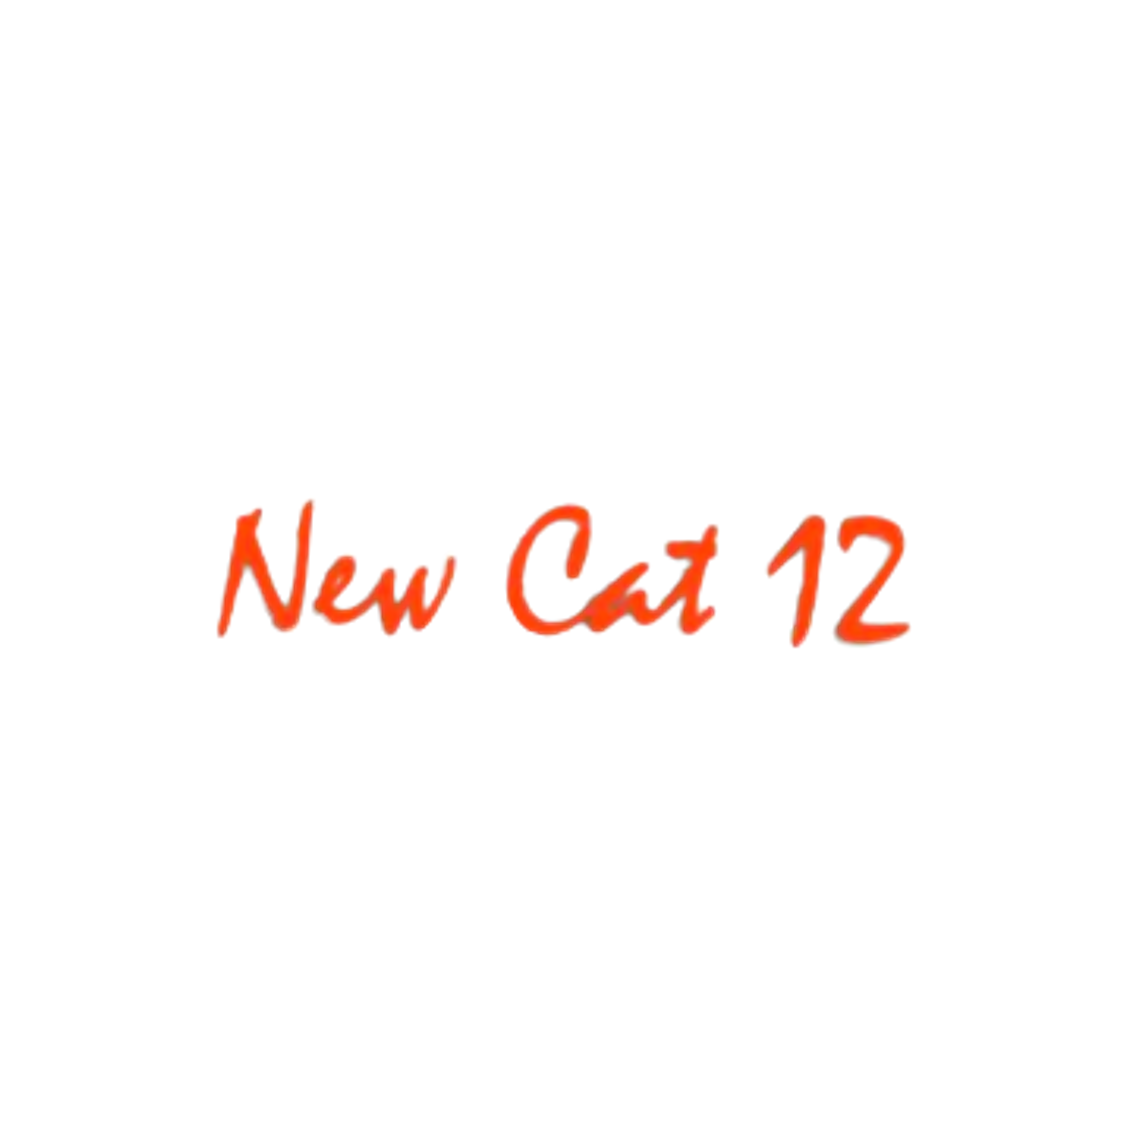 Compatibile New Cat 12